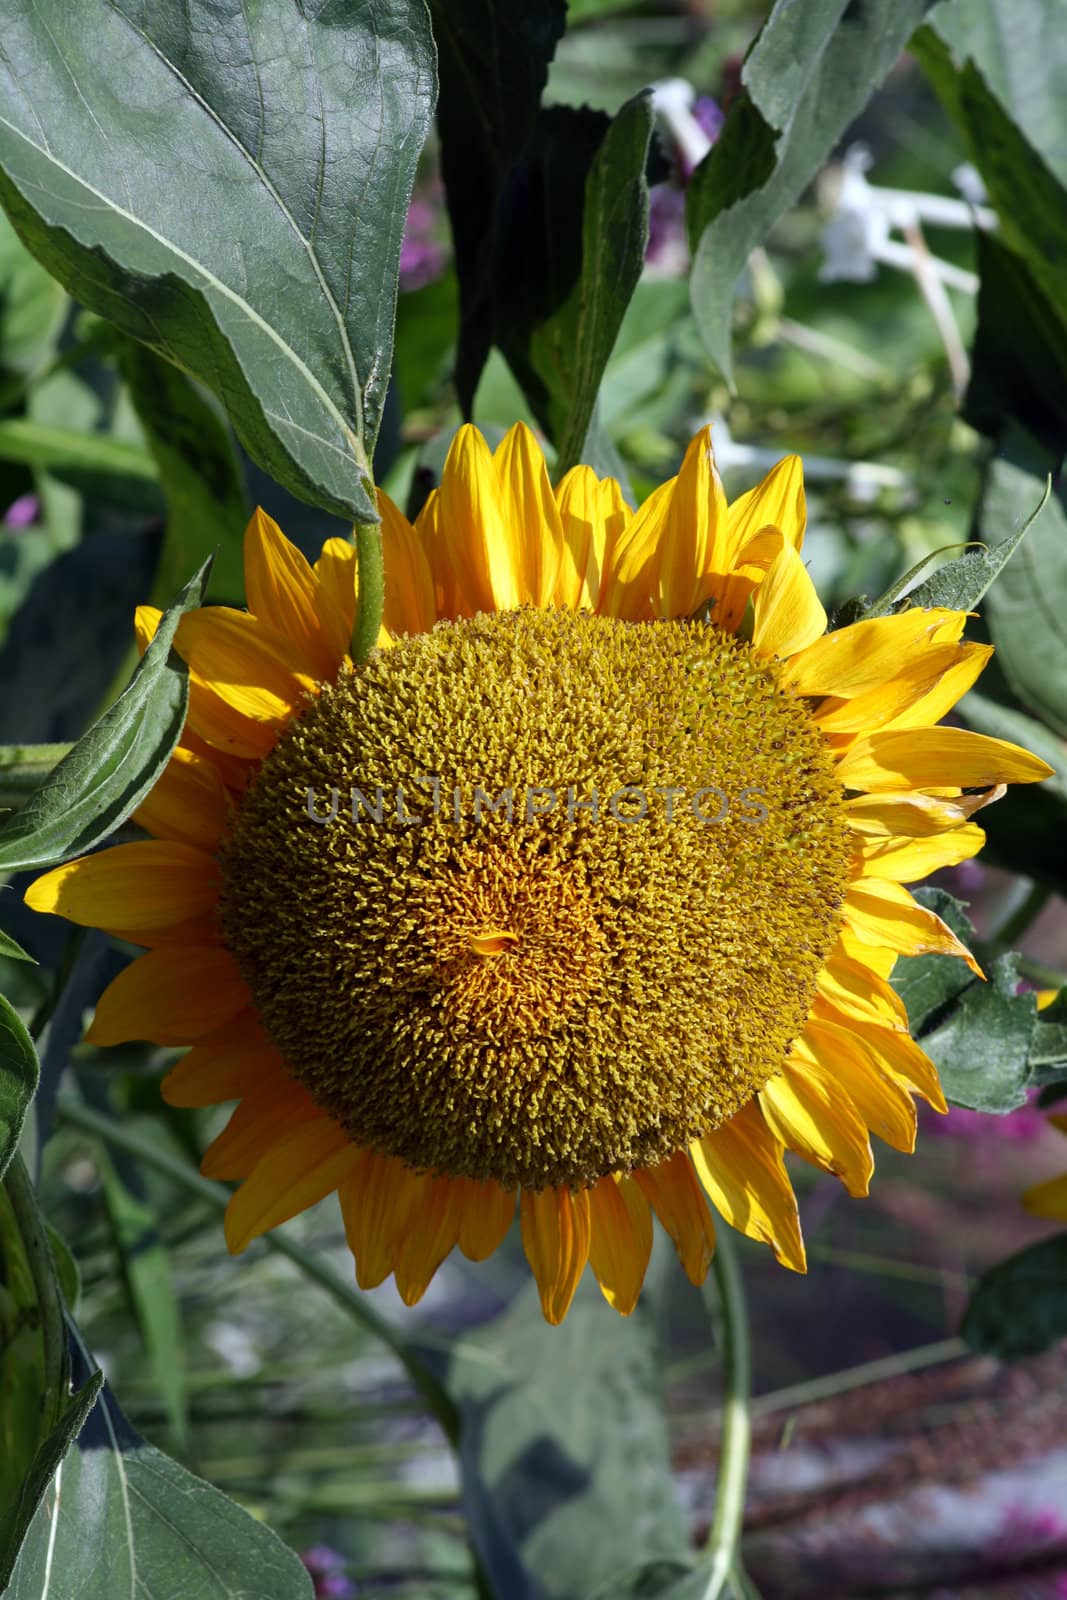 A sunflower, state flower of Kansas.